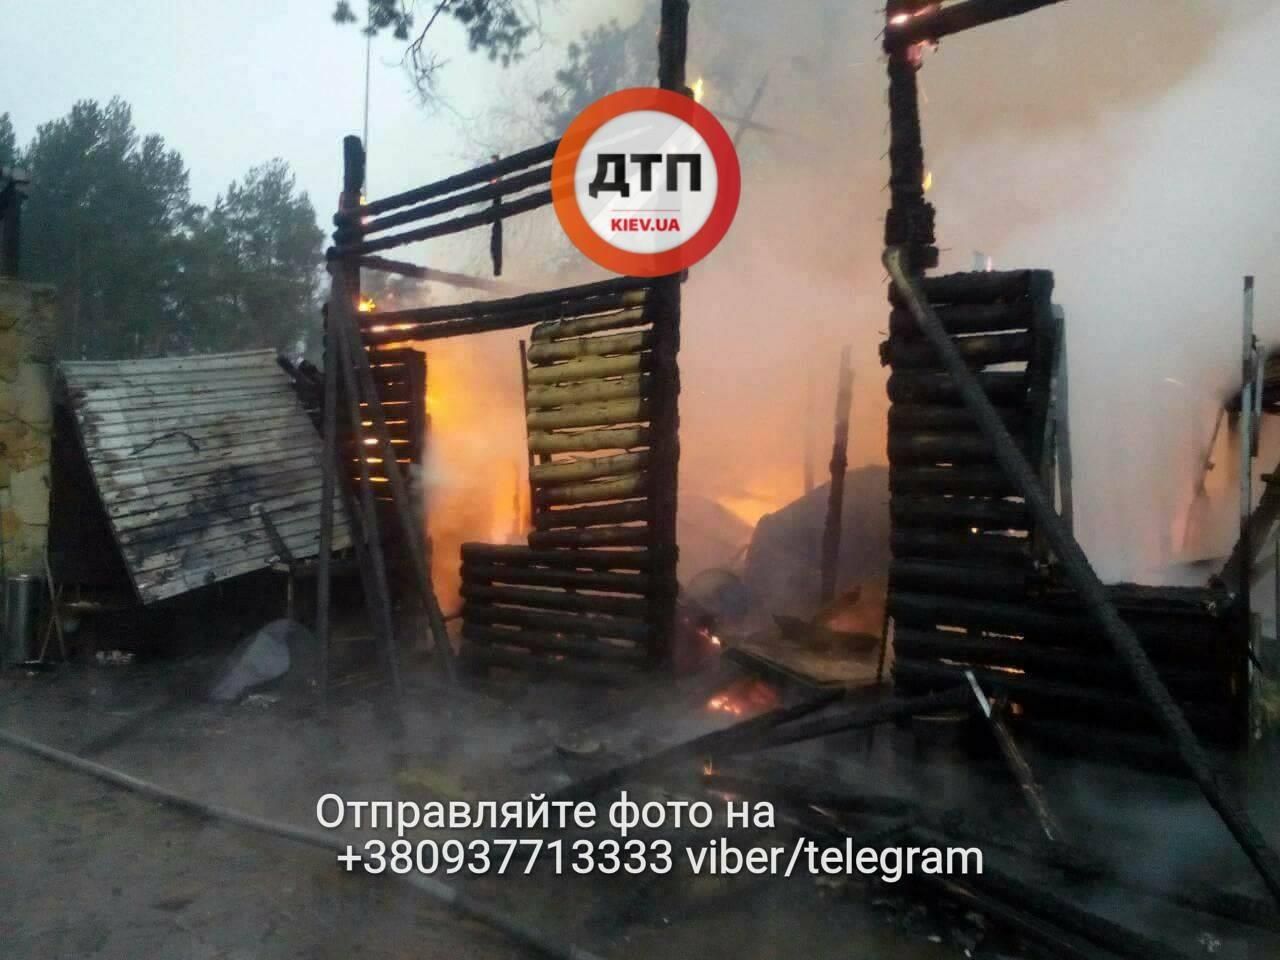 В Киеве загорелся ресторан: опубликовали фото